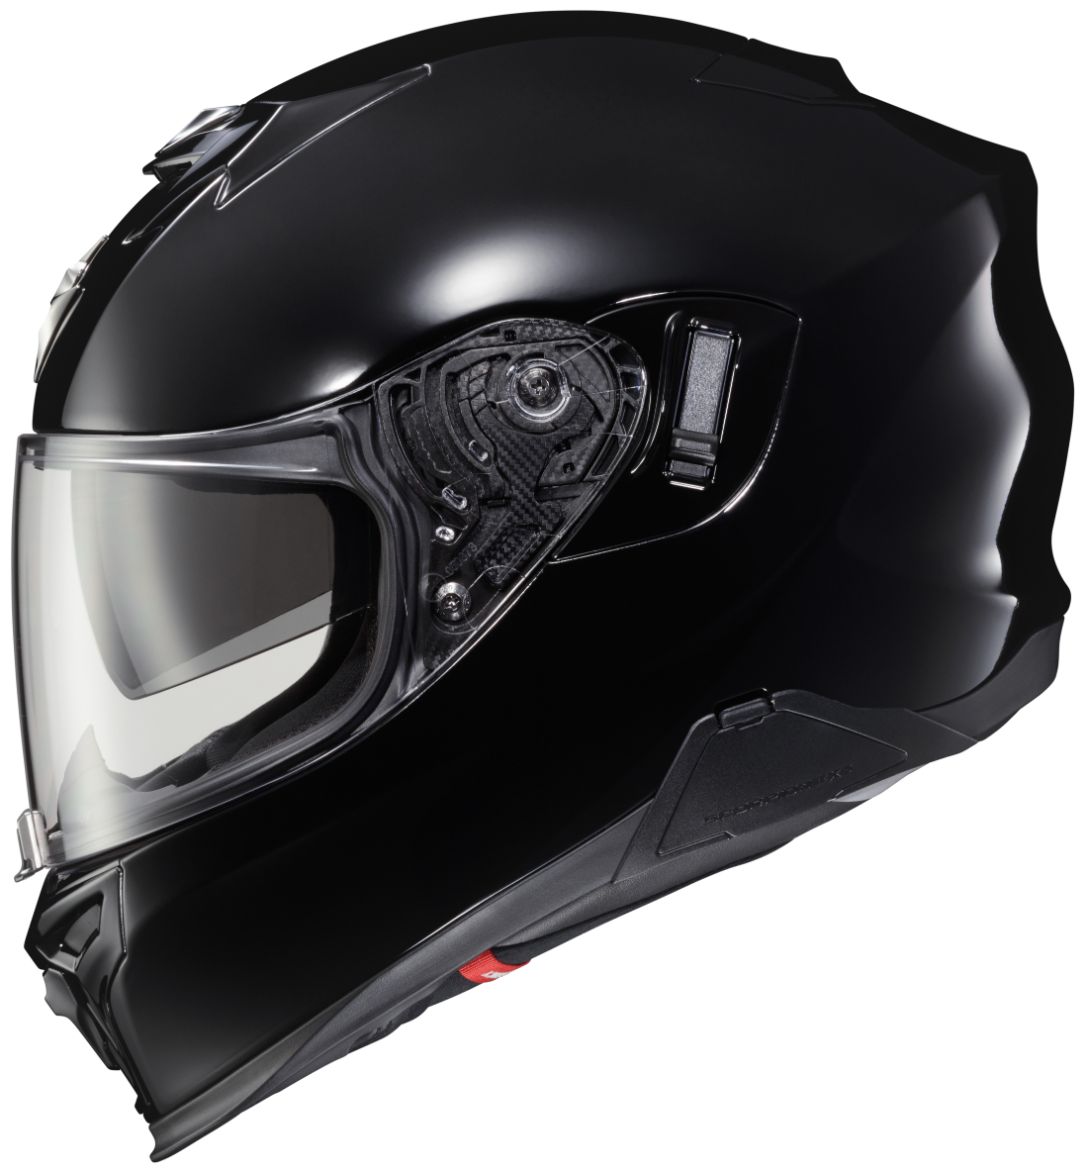 3xlまで Scorpion スコーピオン Exo T5 Helmet フルフェイスヘルメット ライダー バイク レーシング ツーリングにも かっこいい 大きいサイズあり おすすめ Amaclub Bayleafkitchen Co Uk